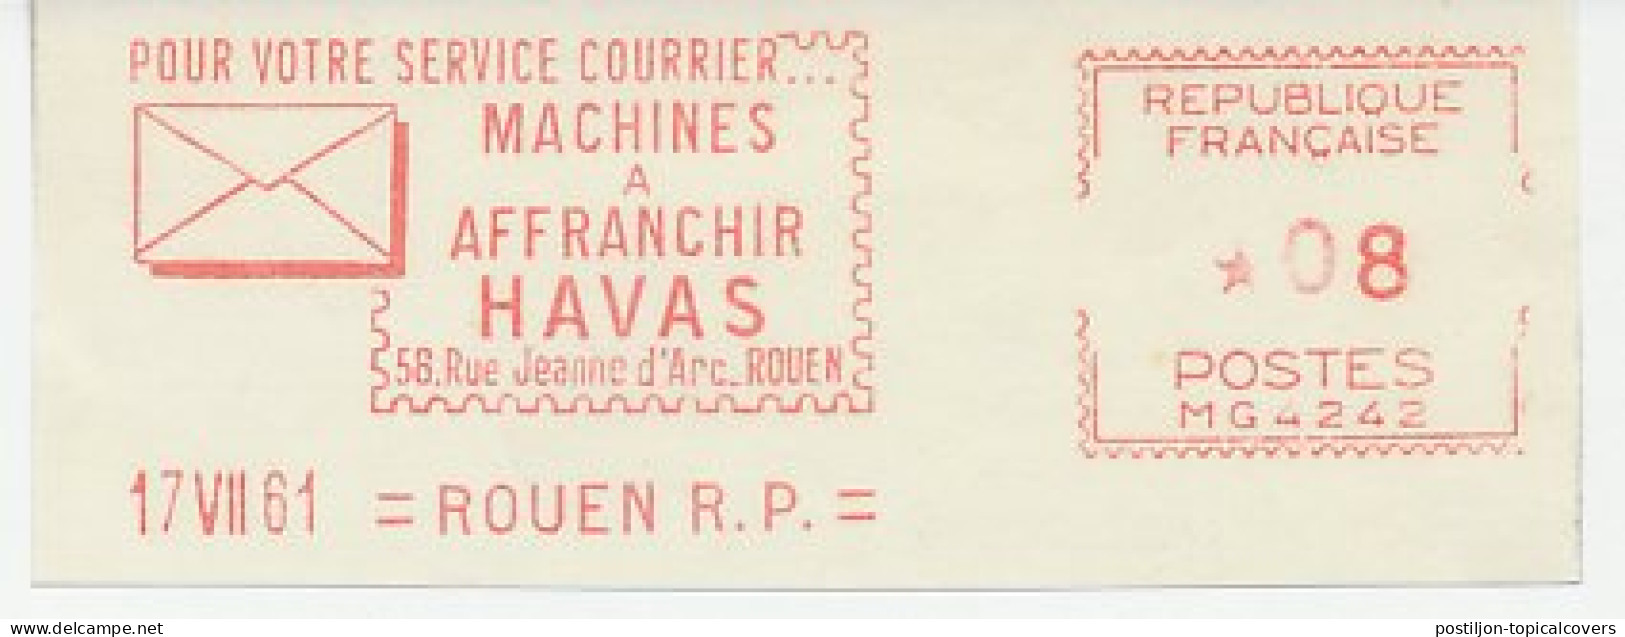 Meter Cut France 1961 Havas - Viñetas De Franqueo [ATM]